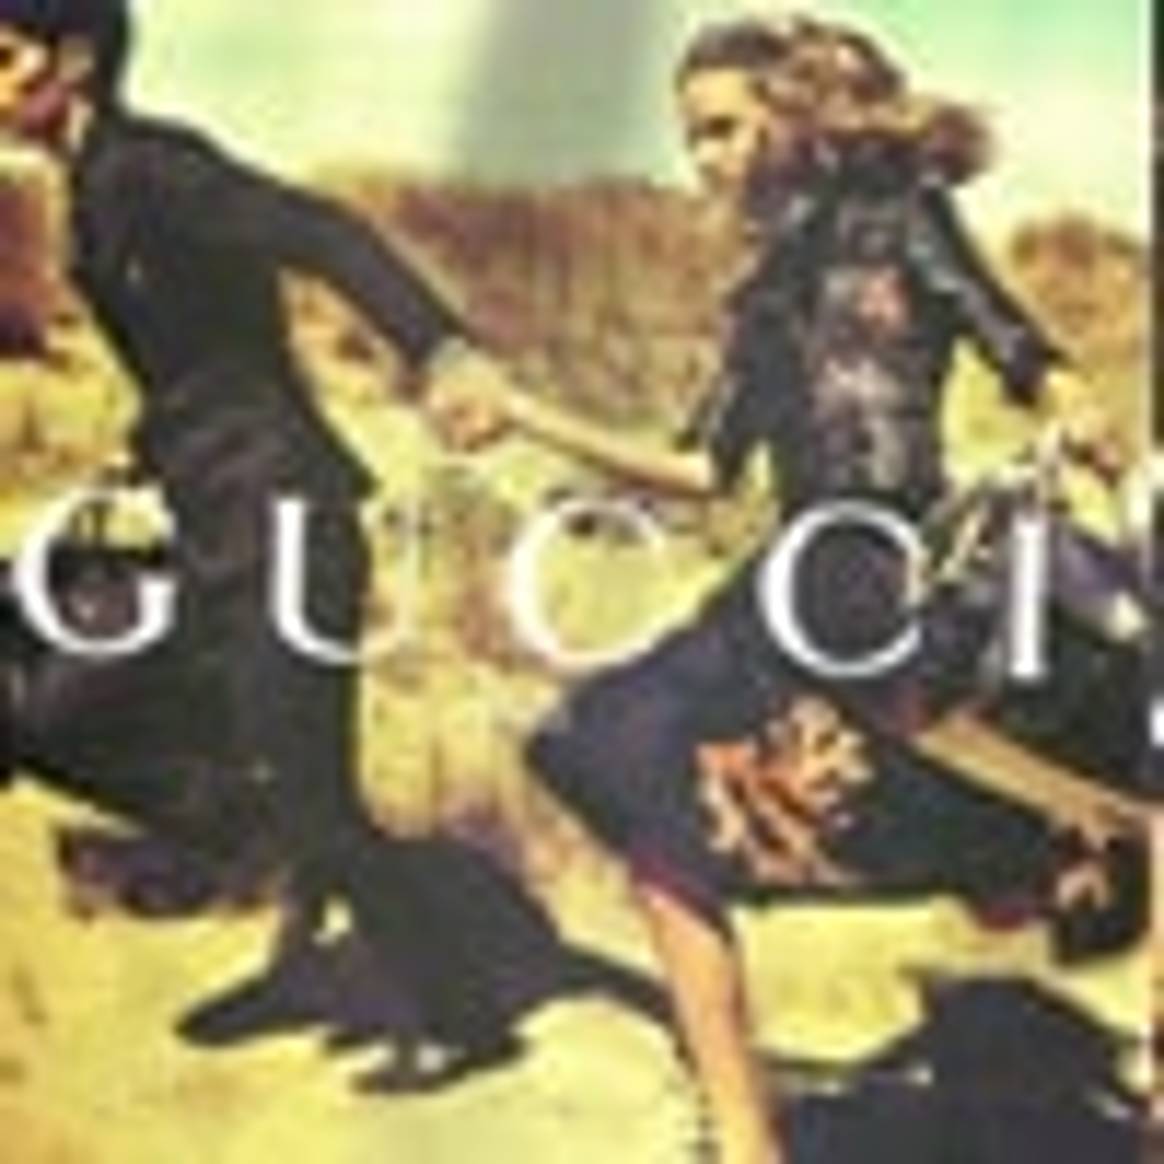 Gucci encabeza las preferencias mundiales